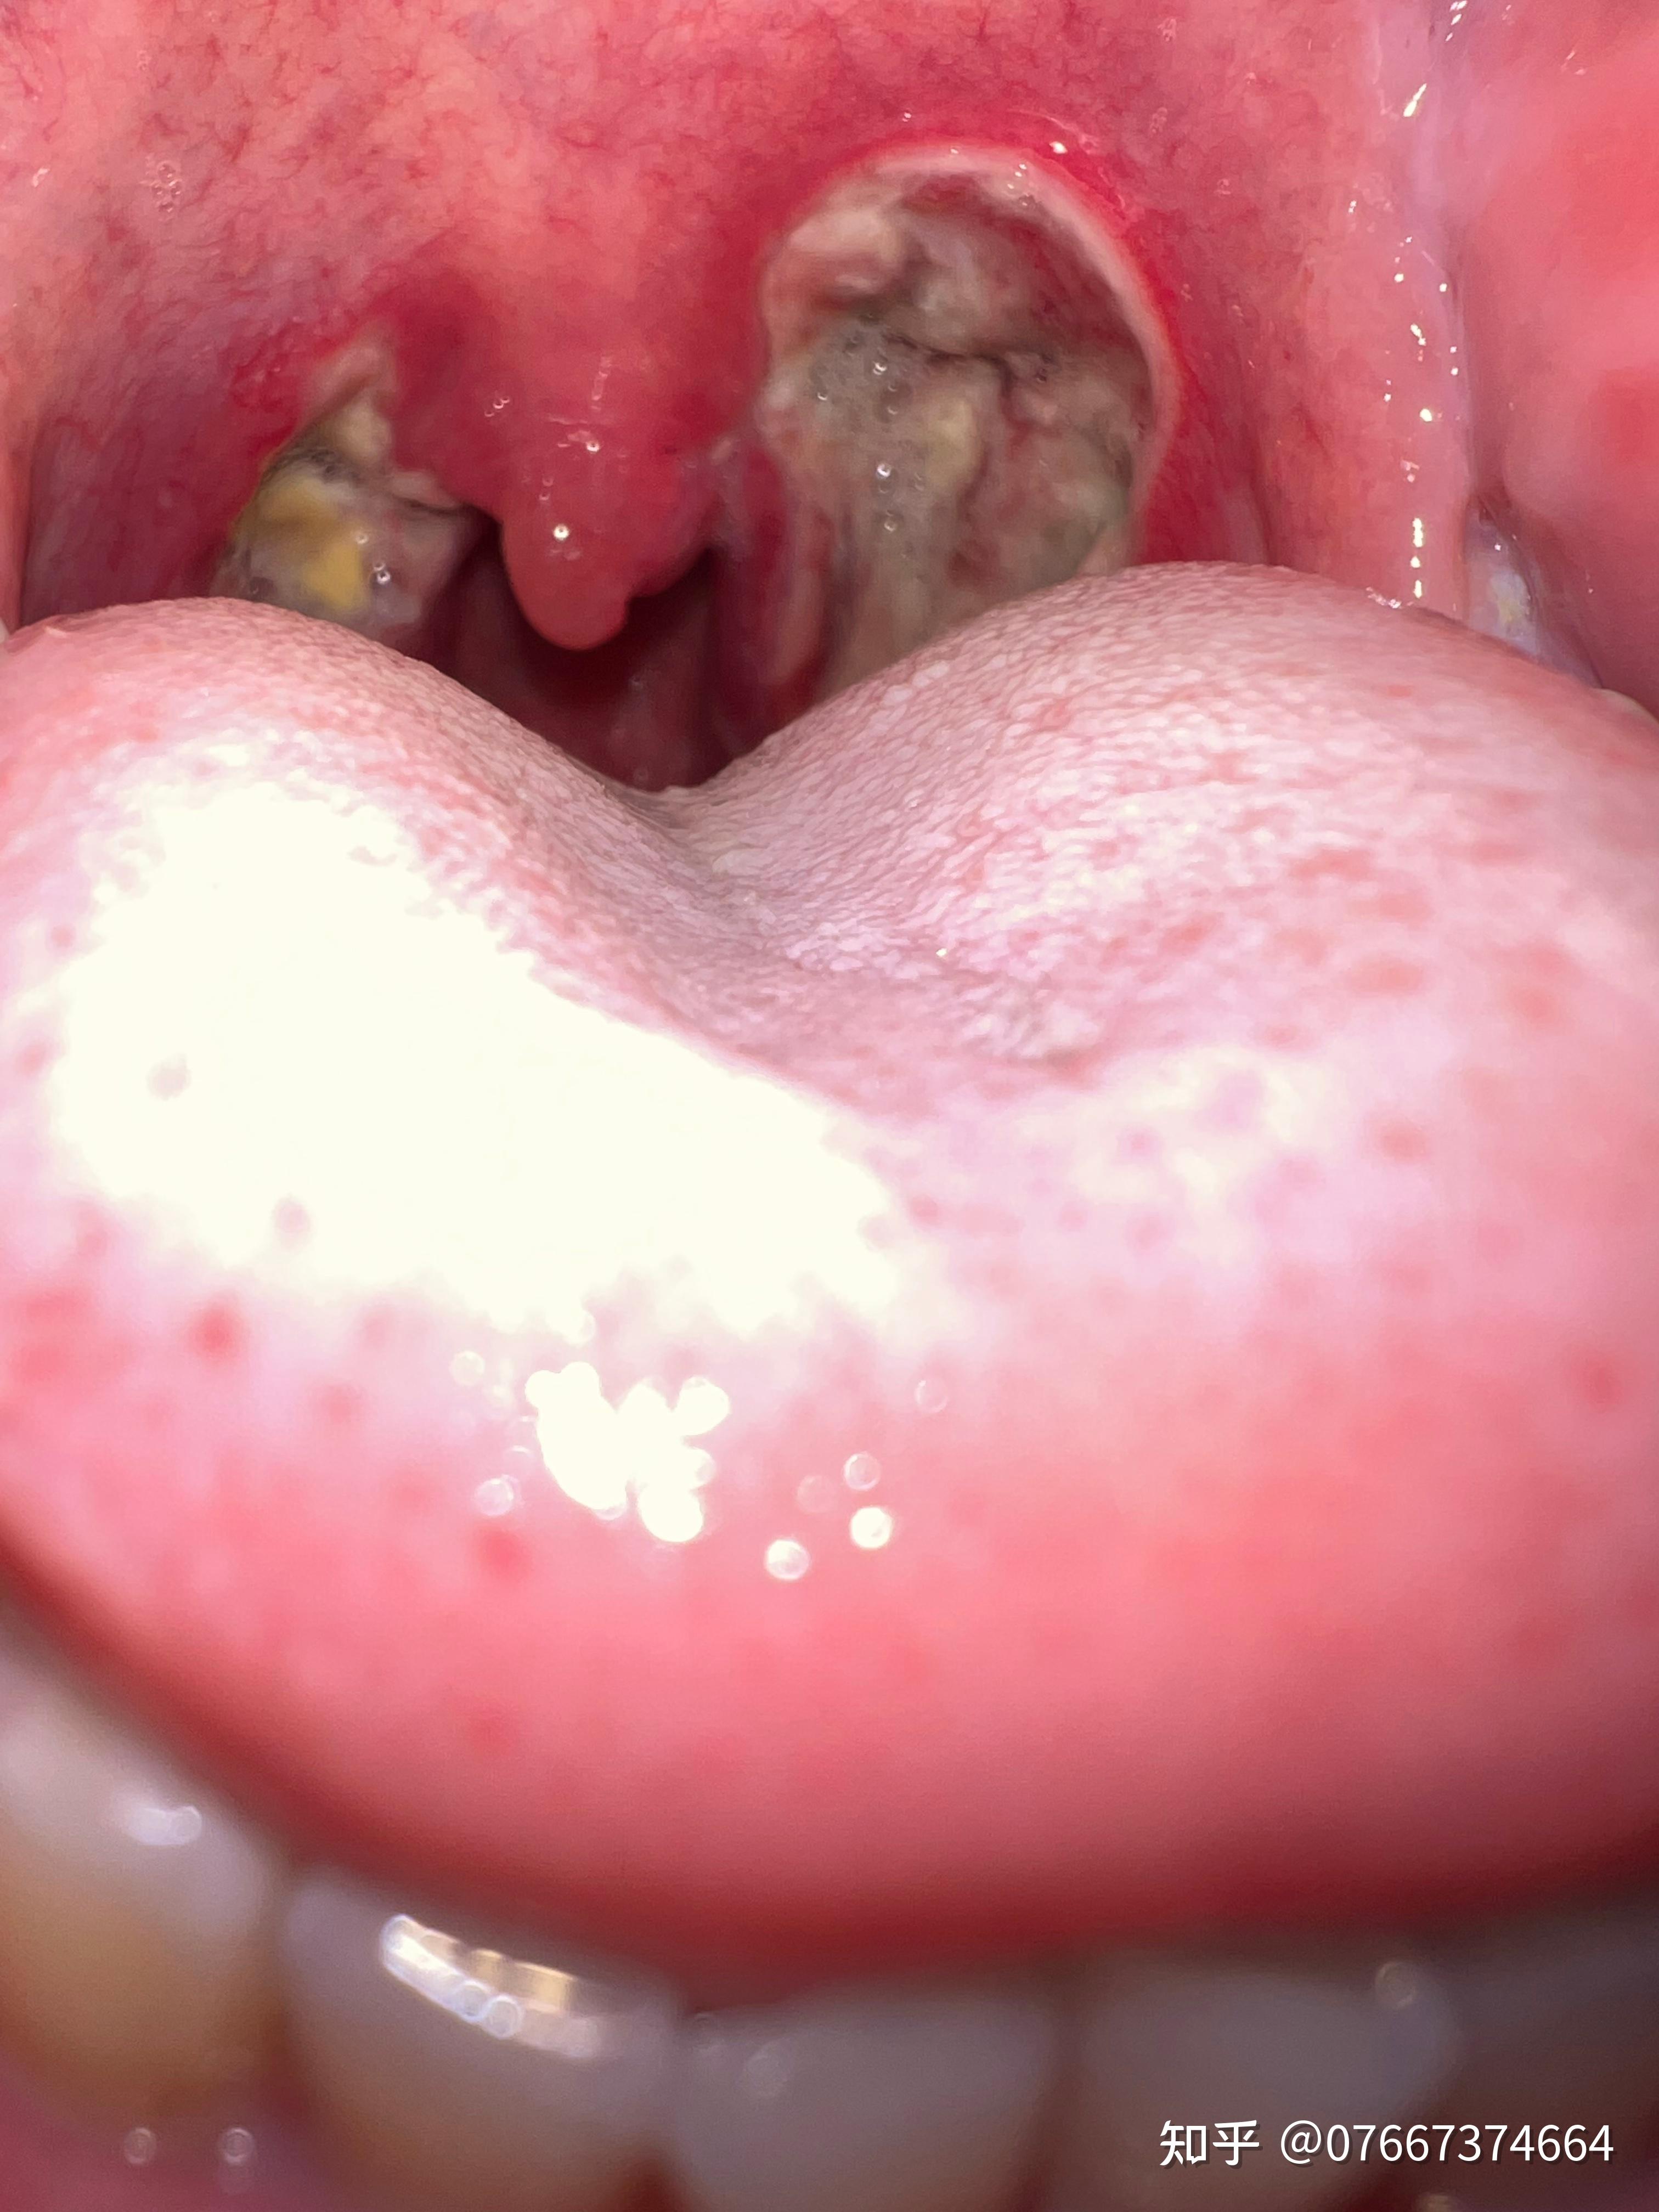 咽喉劈裂的位置图片图片